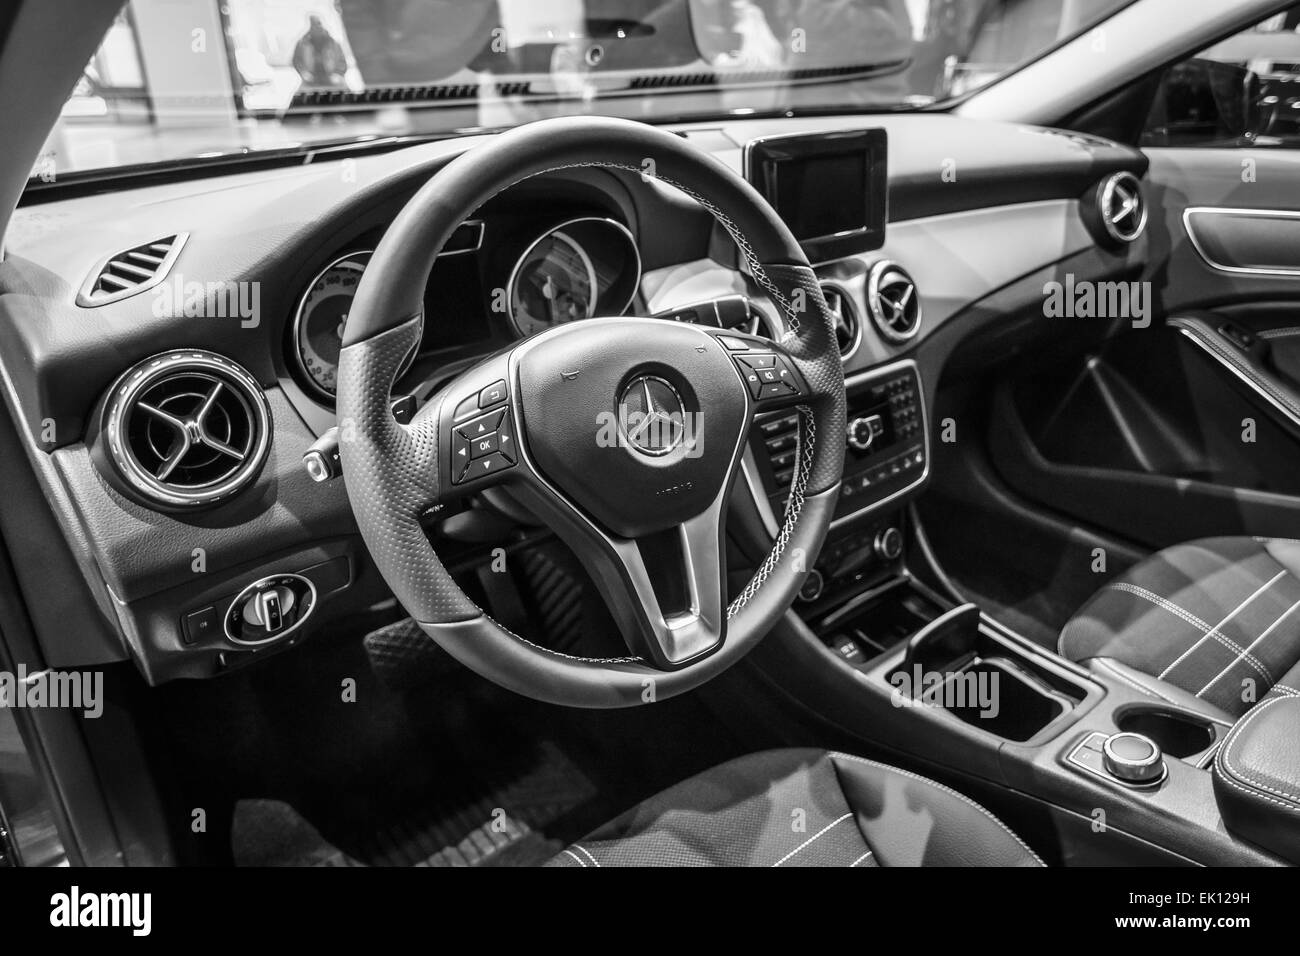 Cabine d'une voiture de luxe compact Mercedes-Benz Classe B Electric Drive. Produite depuis 2014. Banque D'Images